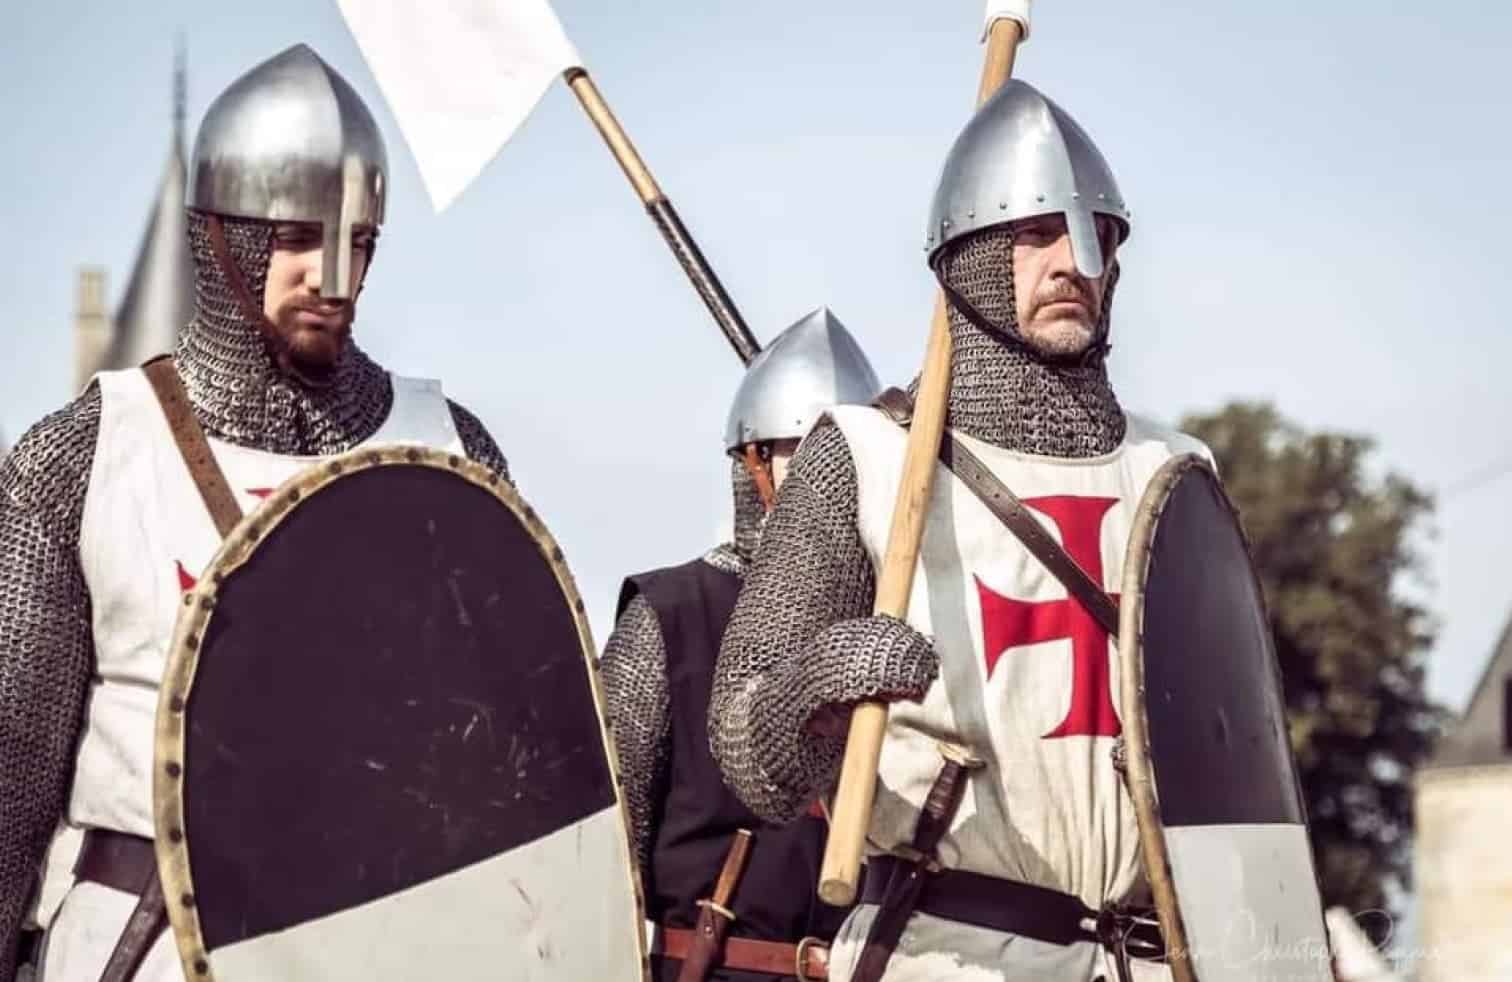 Des reconstituteurs habillés en chevaliers médiévaux en armure, portant des boucliers et un drapeau.